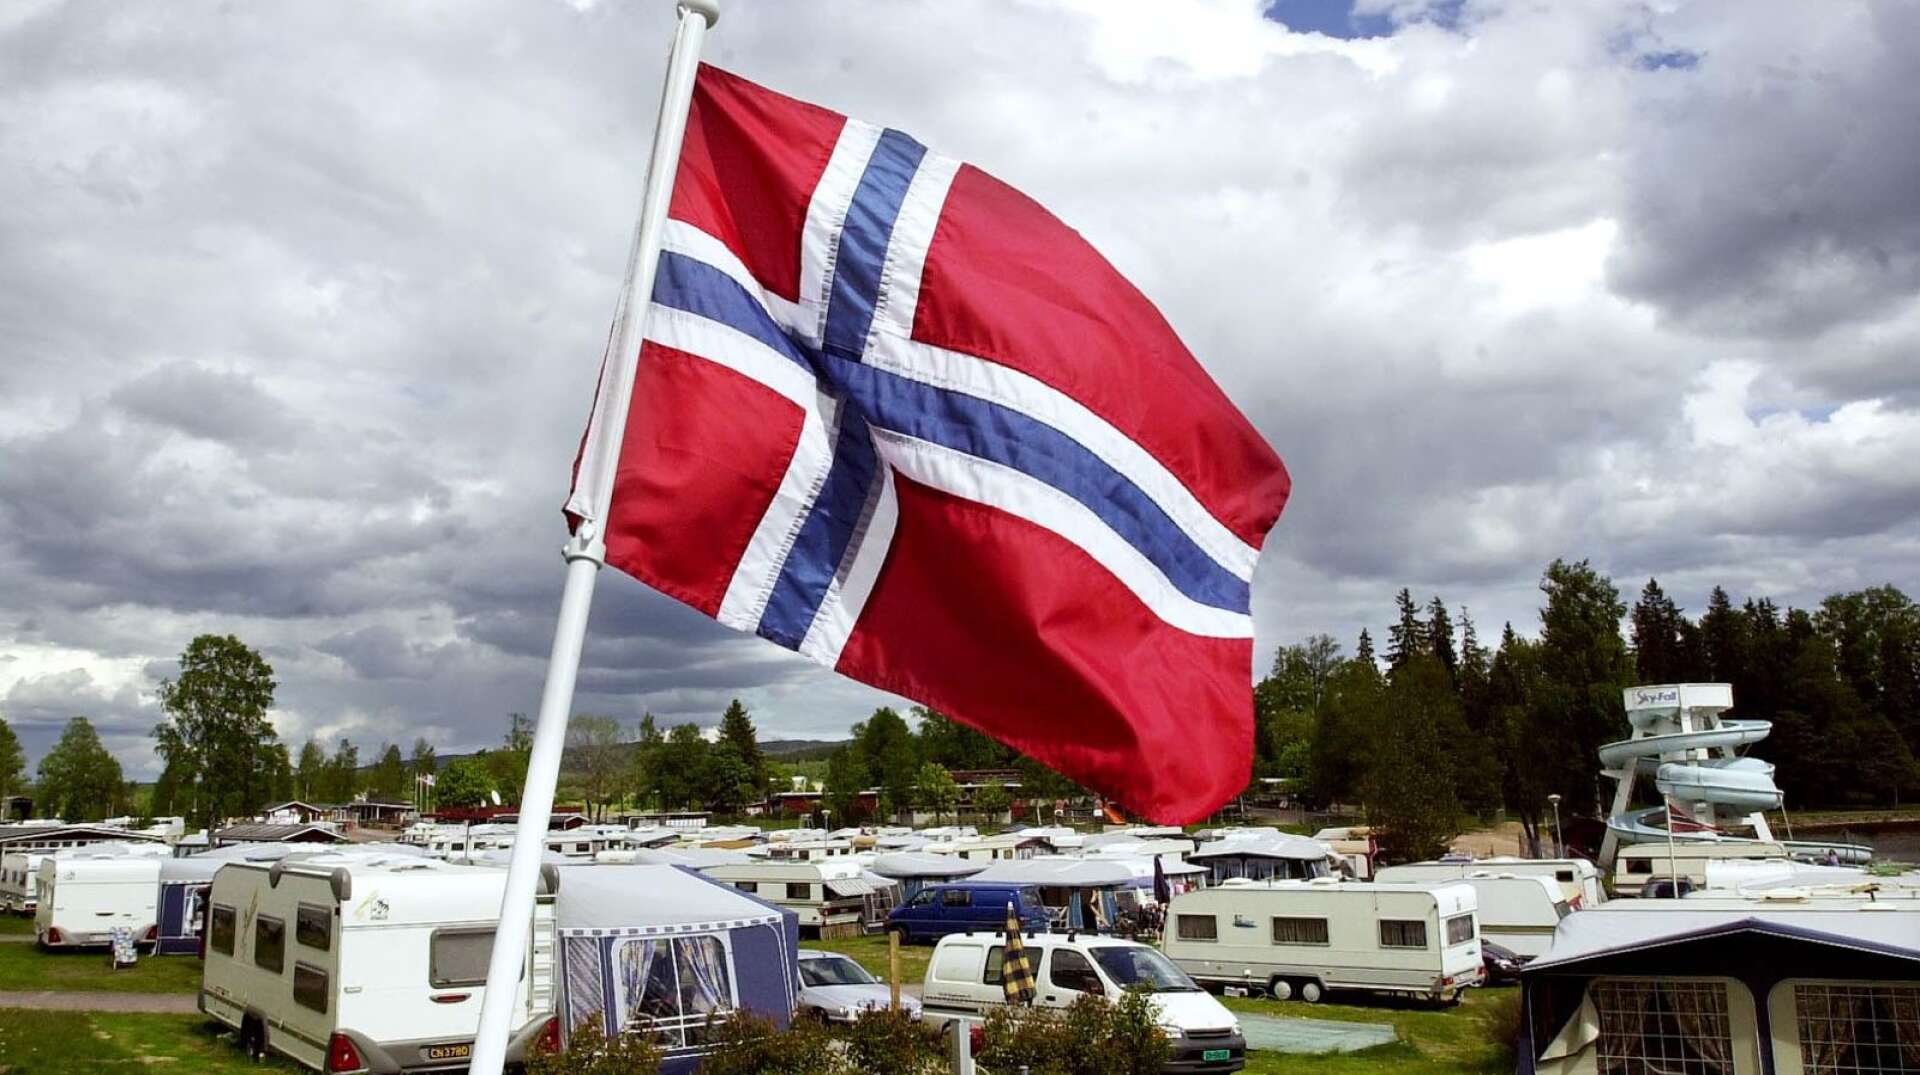 Efter några års minskning ökar antalet norska turister i Värmland igen. De svarar nu för drygt en femtedel av de utländska gästnätterna. Värmland ökar mest i Sverige när det gäller övernattande turister med plus 13 procent.